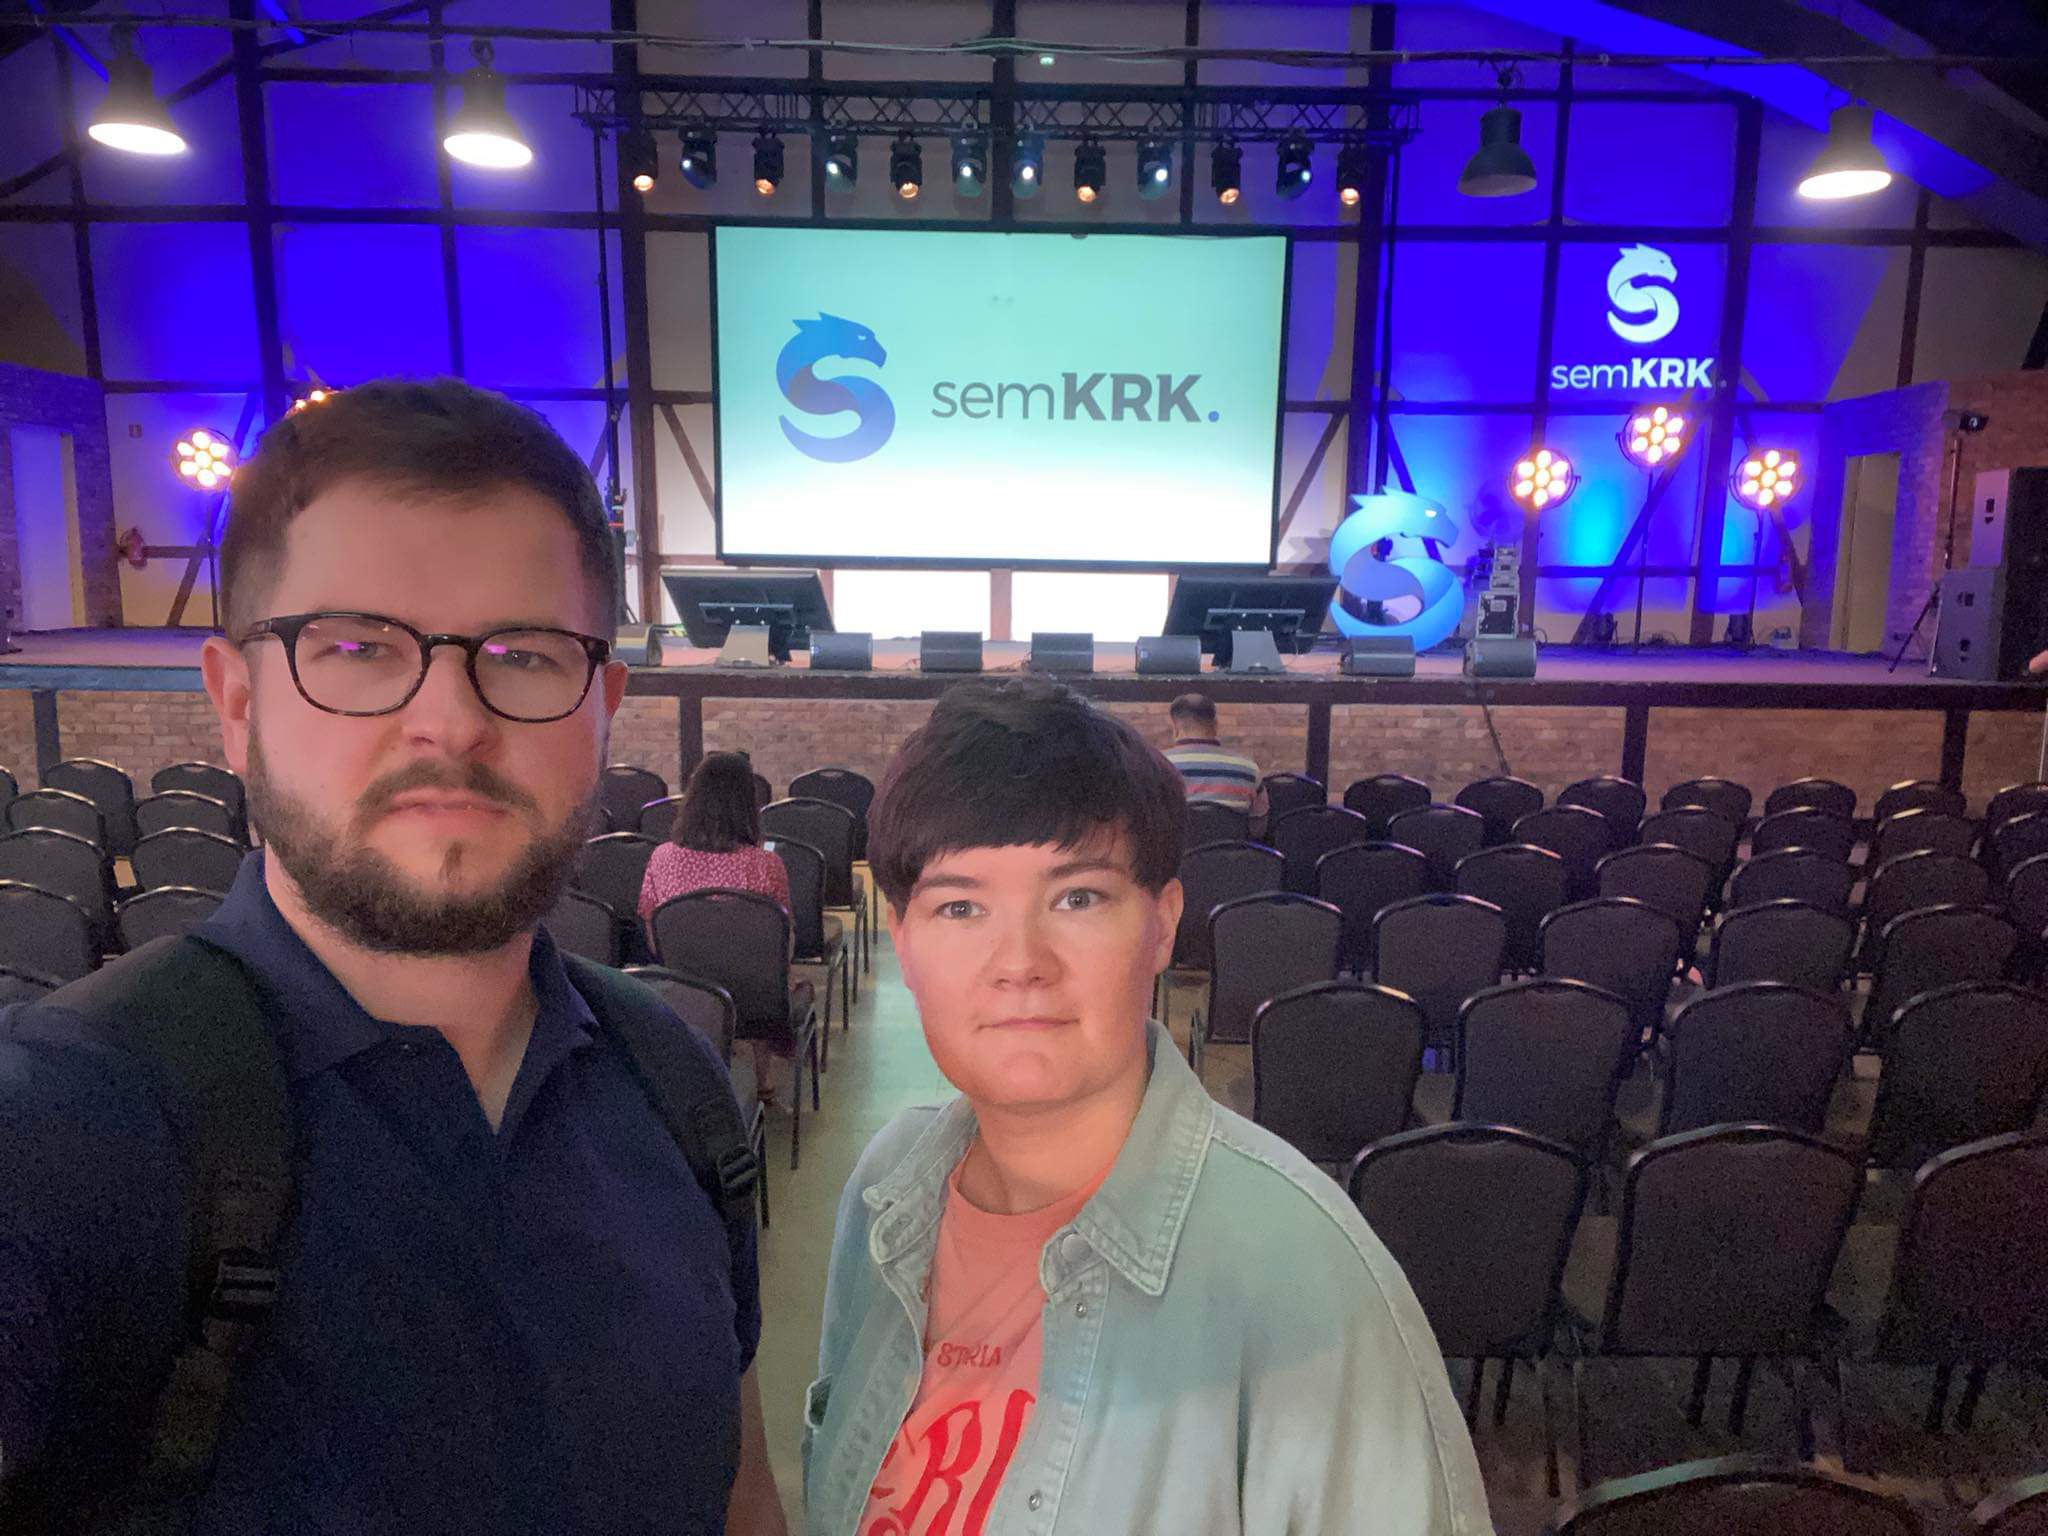 Sala konferencyjna z dwoma osobami robiącymi sobie selfie na tle sceny z logo semKRK i dużą liczbą krzeseł ustawionych przed sceną.